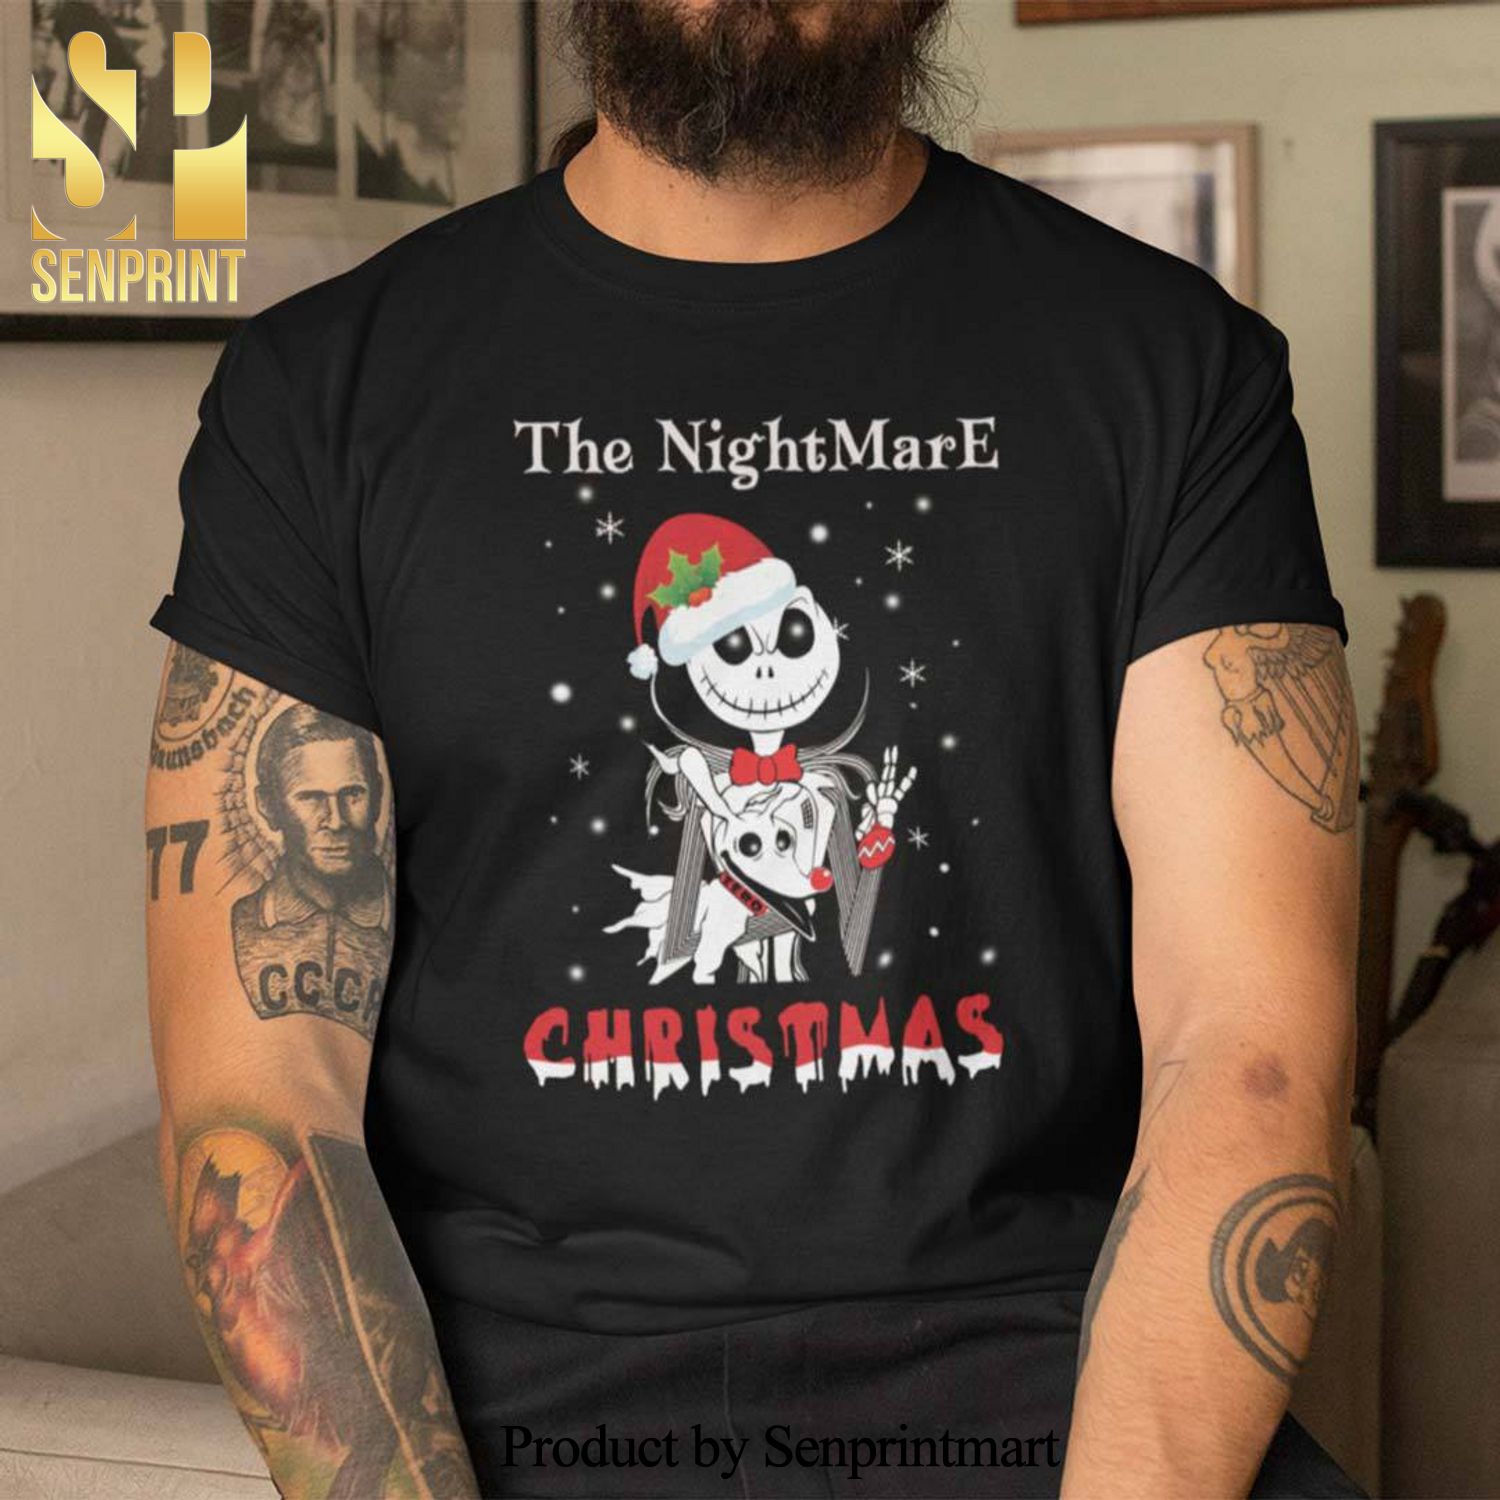 The Nightmare Christmas Gifts Shirts Jack Skellington Christmas Tee